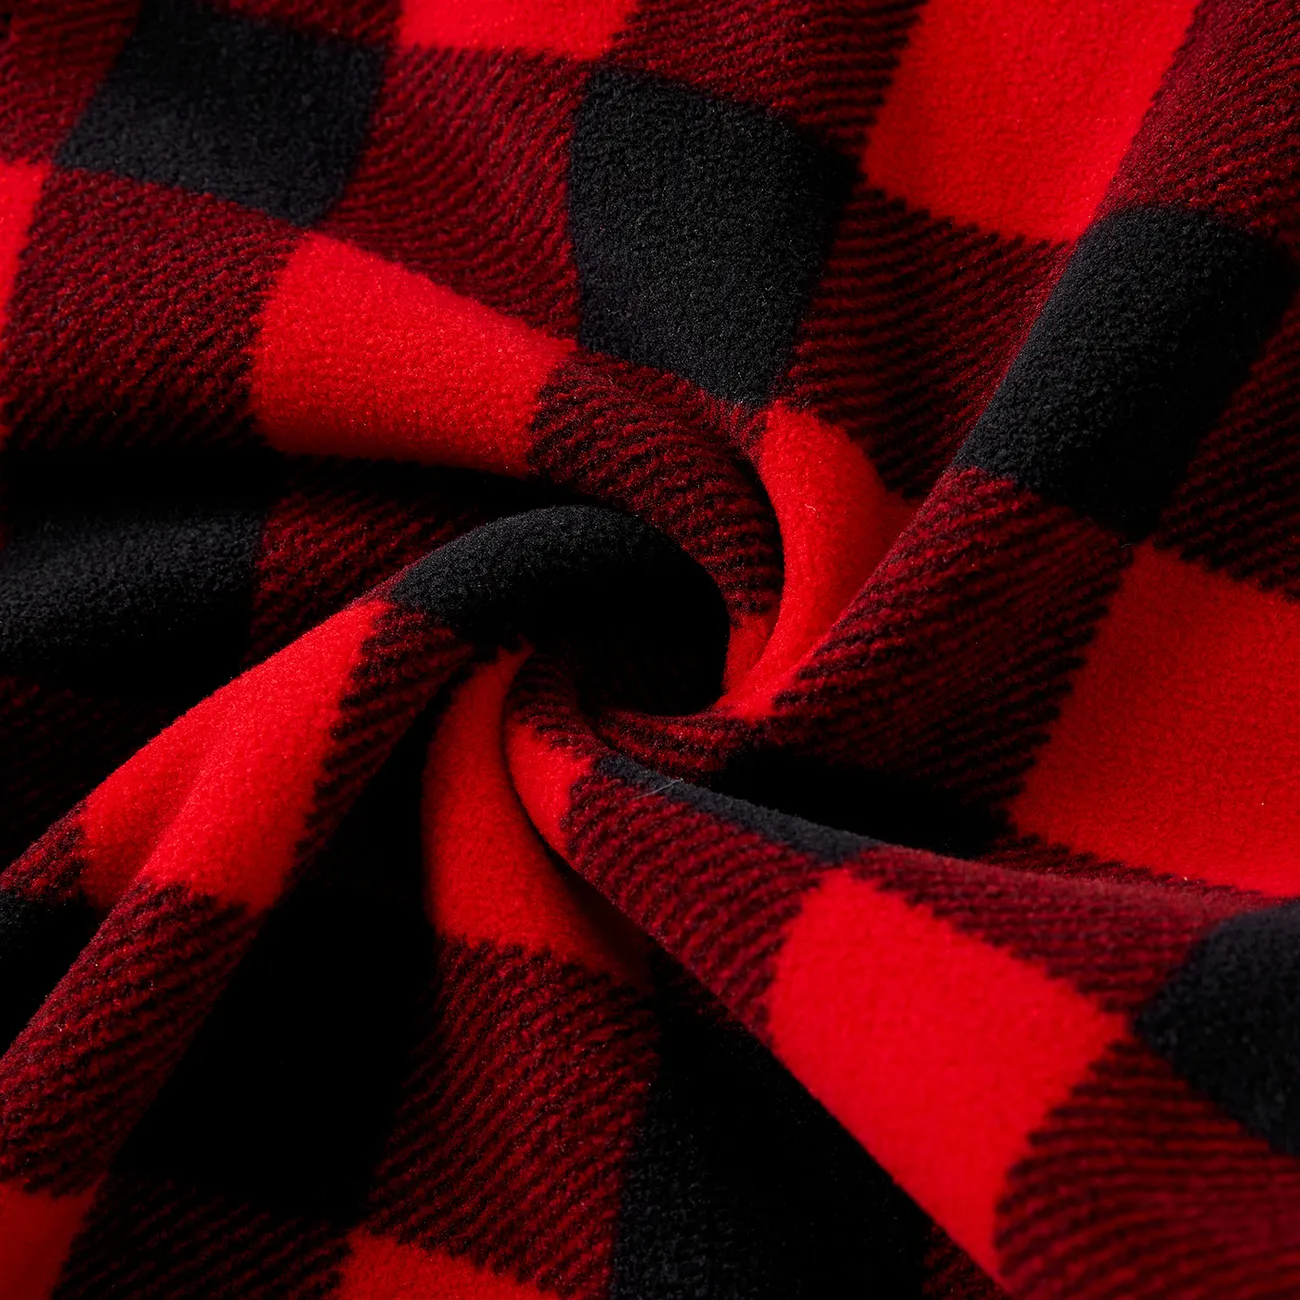 Natal Look de família Manga comprida Conjuntos de roupa para a família Pijamas (Flame Resistant) vermelho preto big image 1